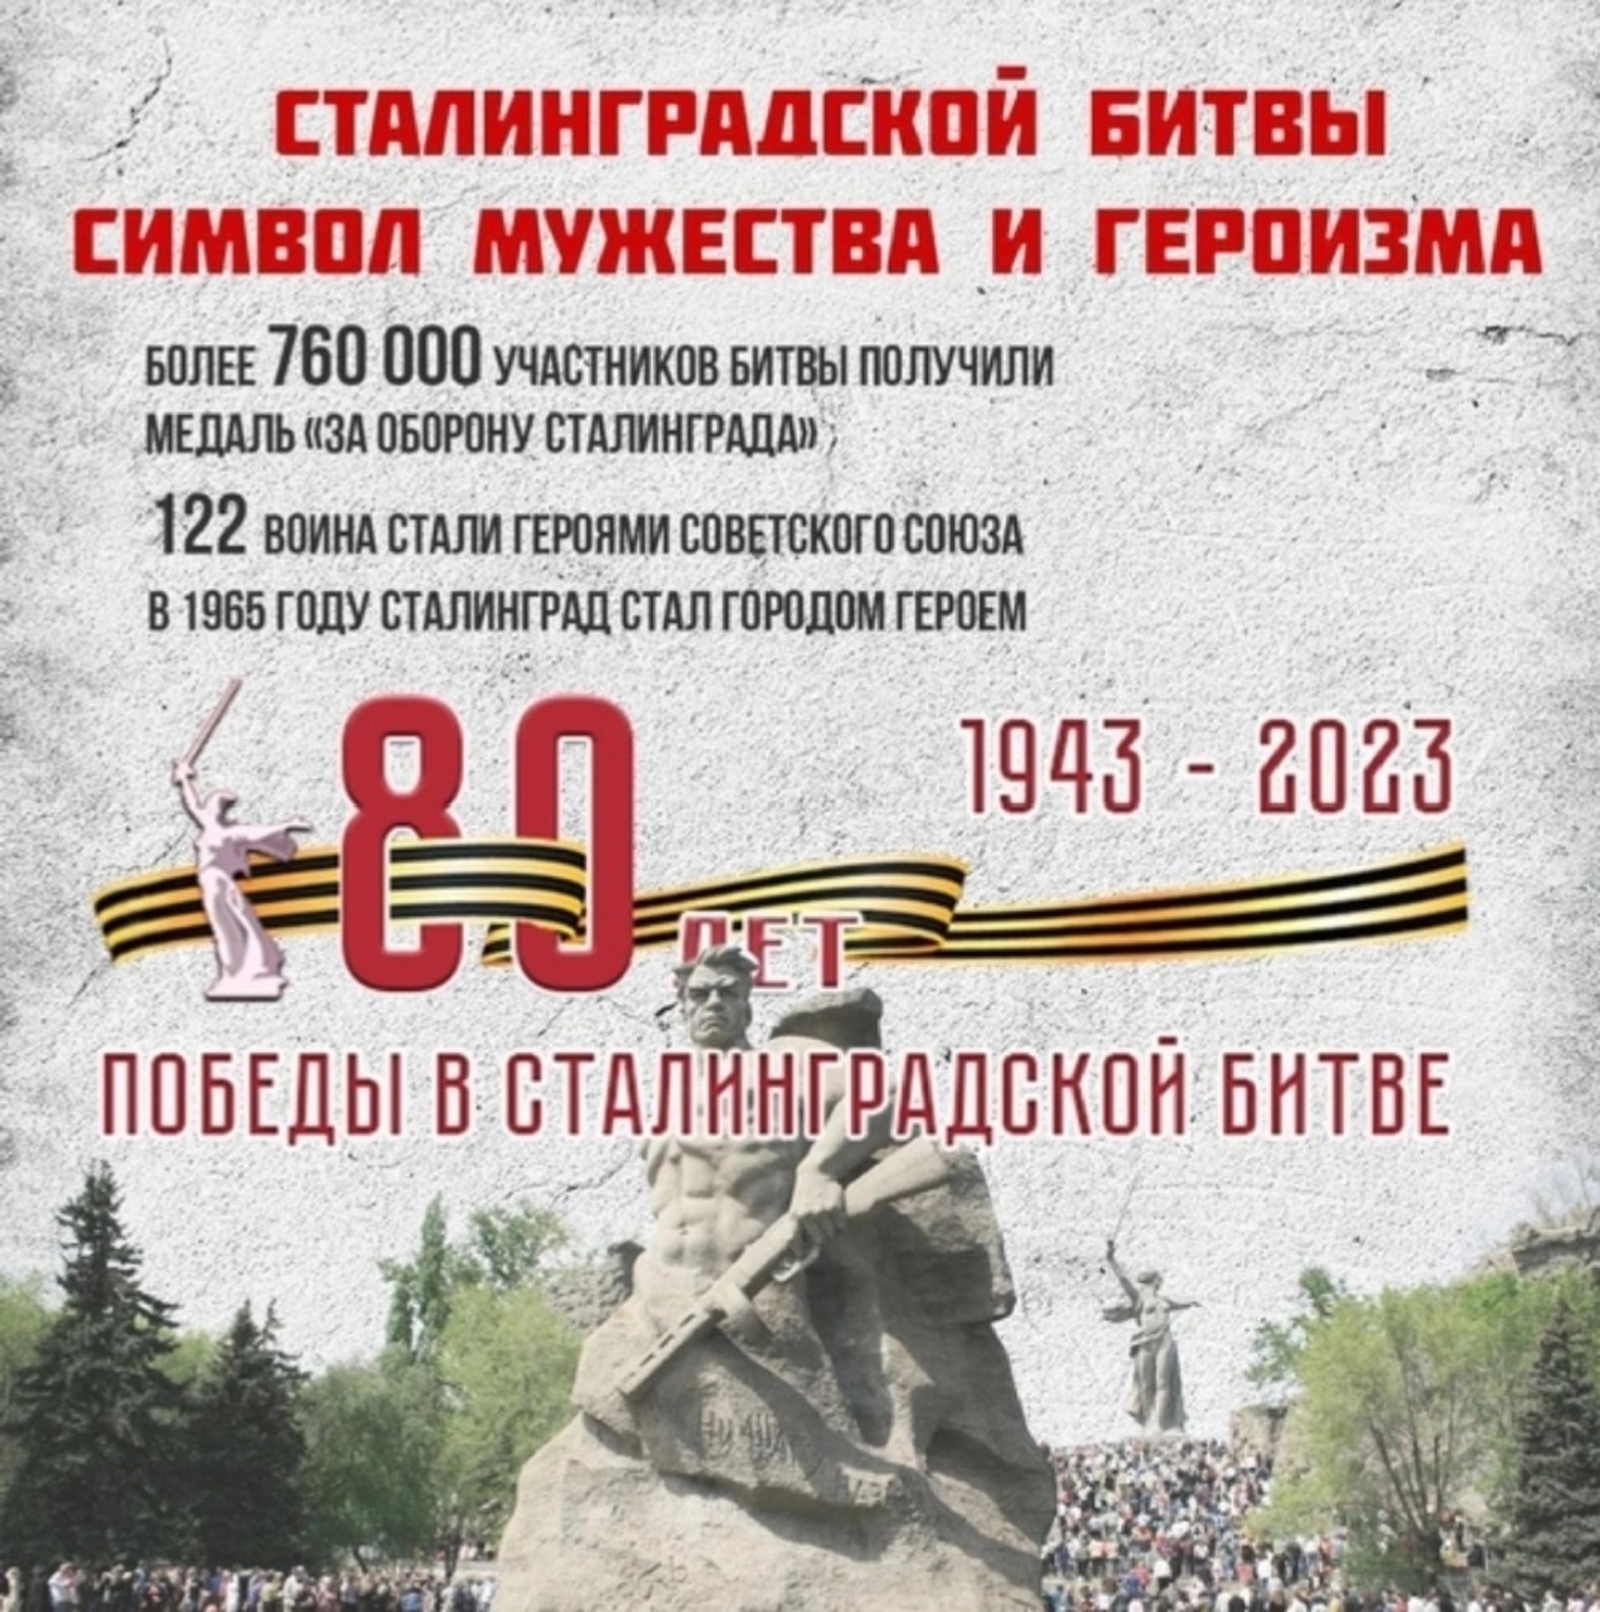 2 февраля 2023 года отмечается 80 лет со дня окончания Сталинградской битвы